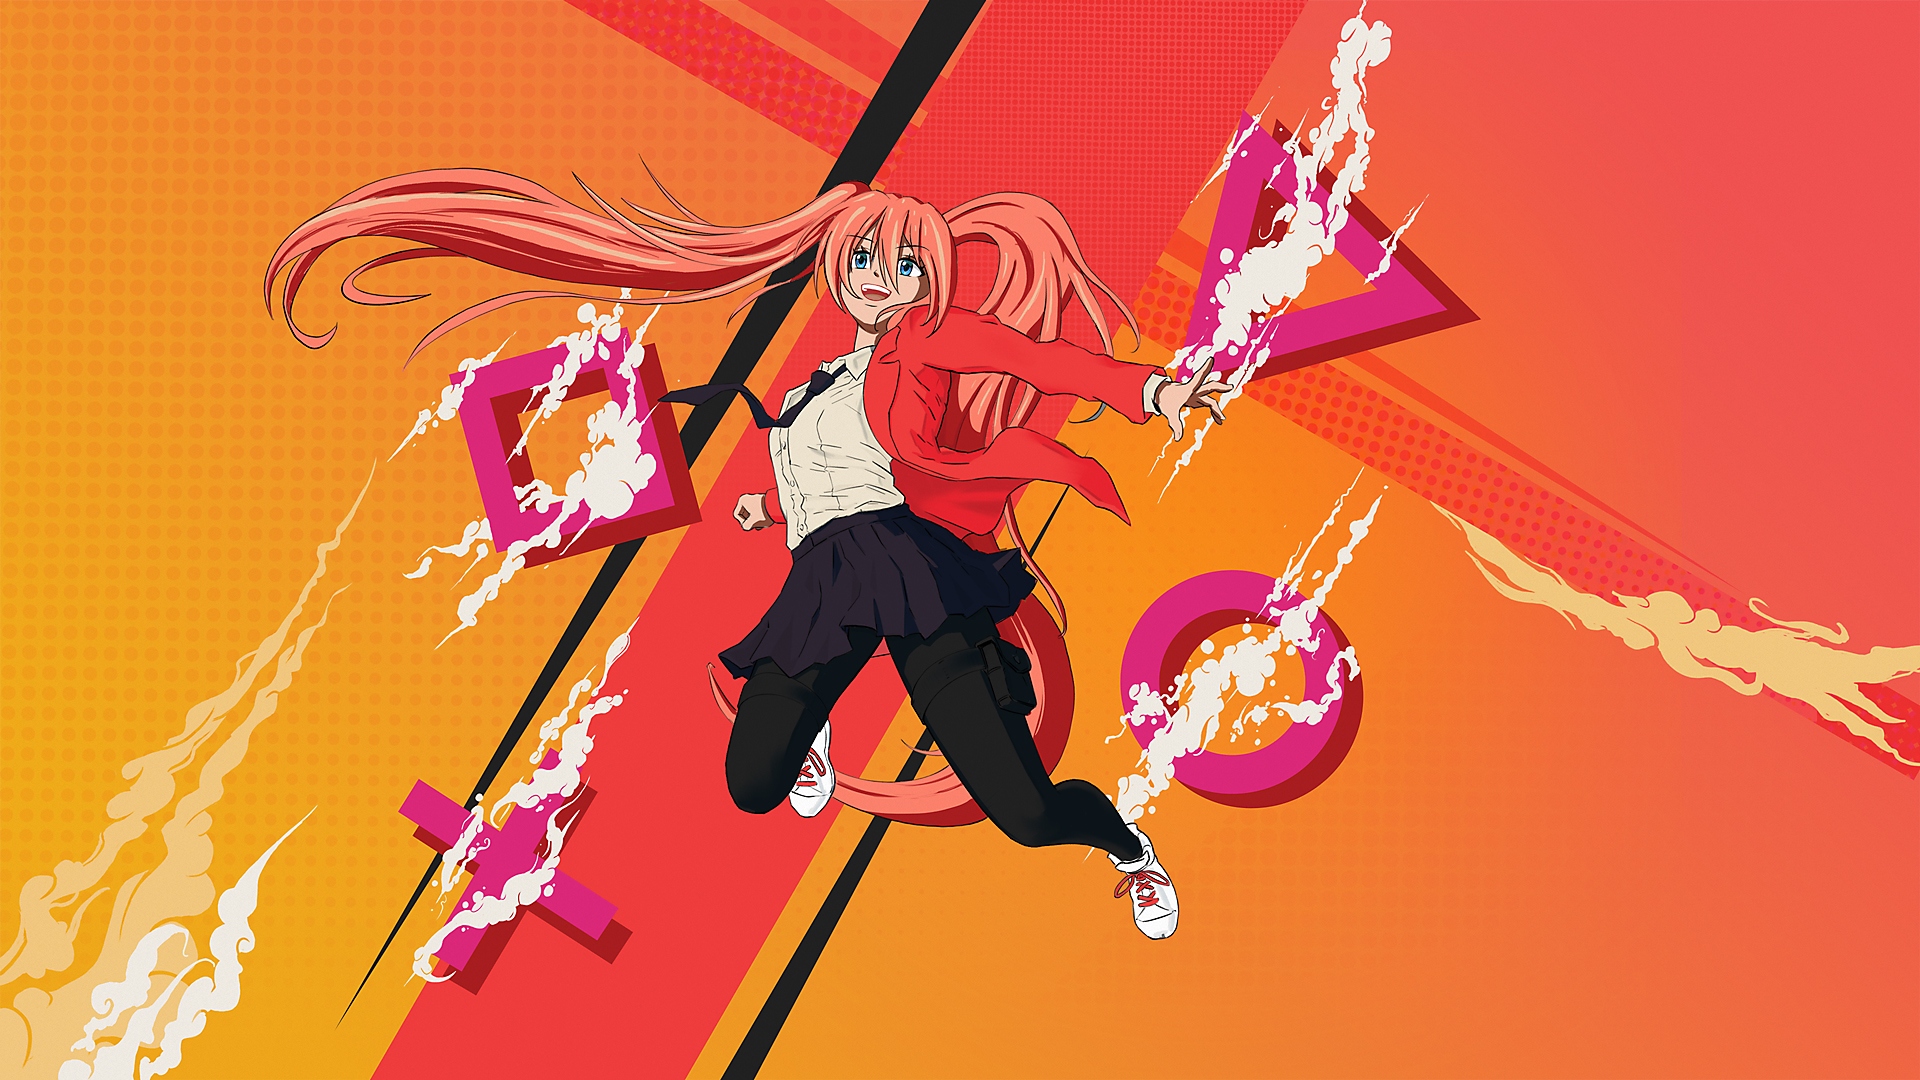 Arte promocional de los mejores juegos de manga y anime para PS4 y PS5